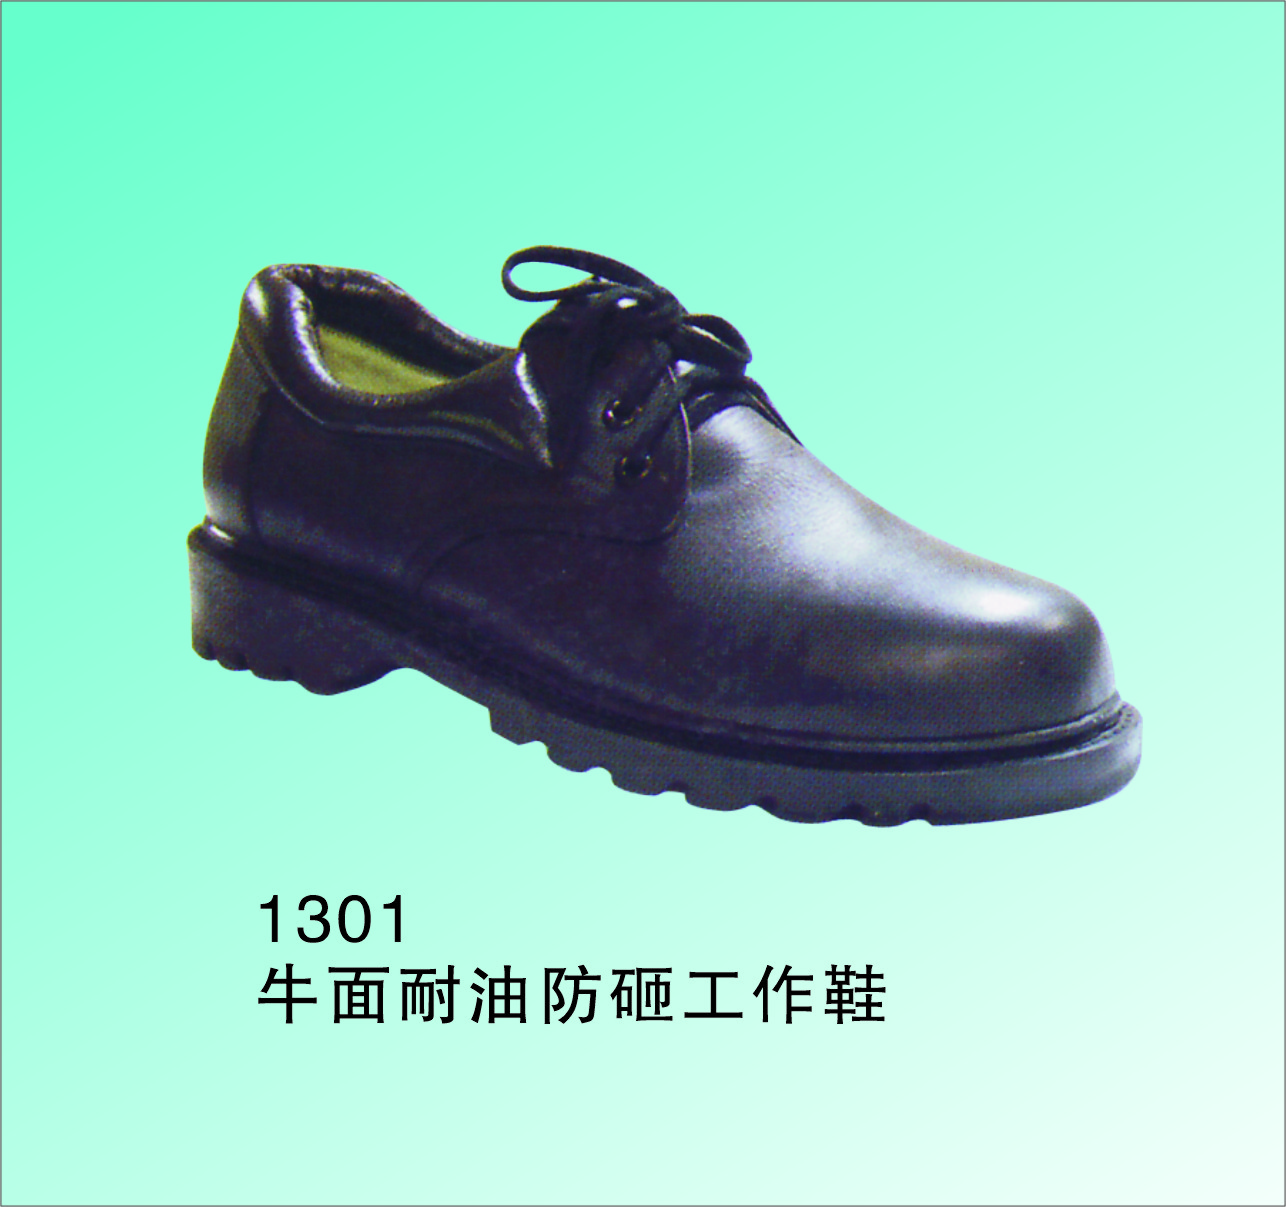 手工制 防砸耐磨工作鞋 牛面纯棉里优质橡胶底 1301